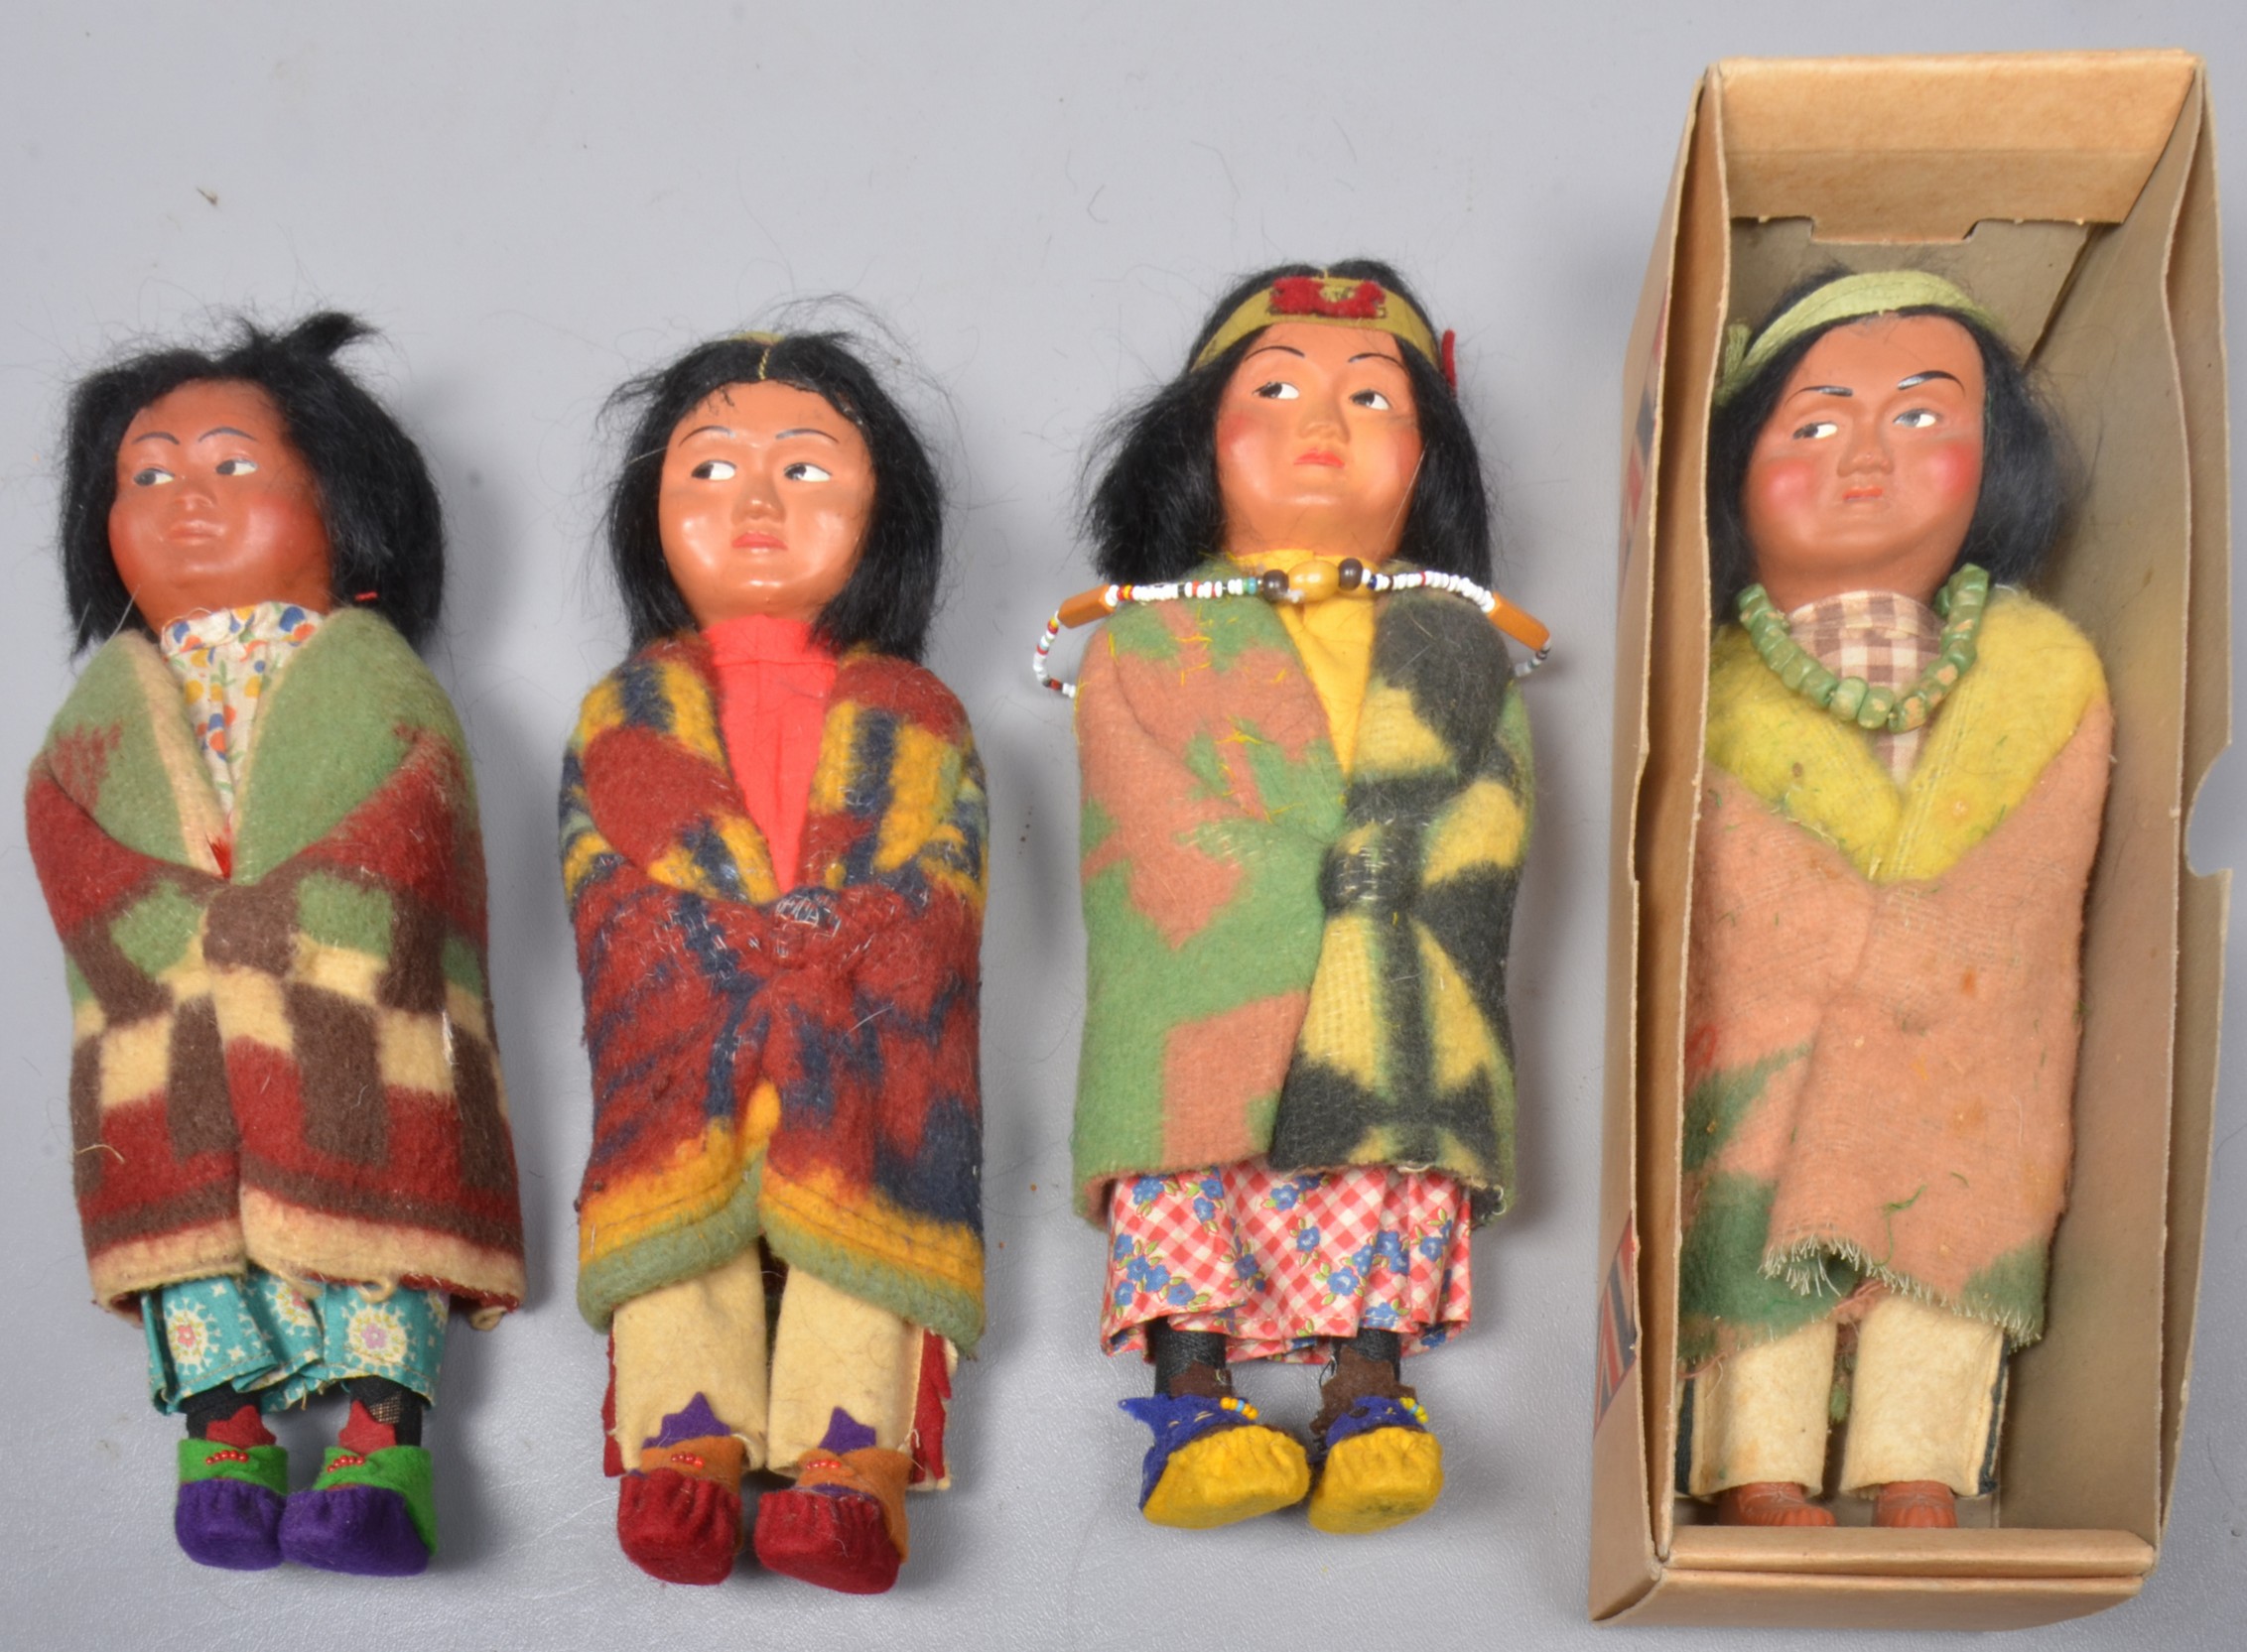  4 Skookum dolls to include 4029 3b6629